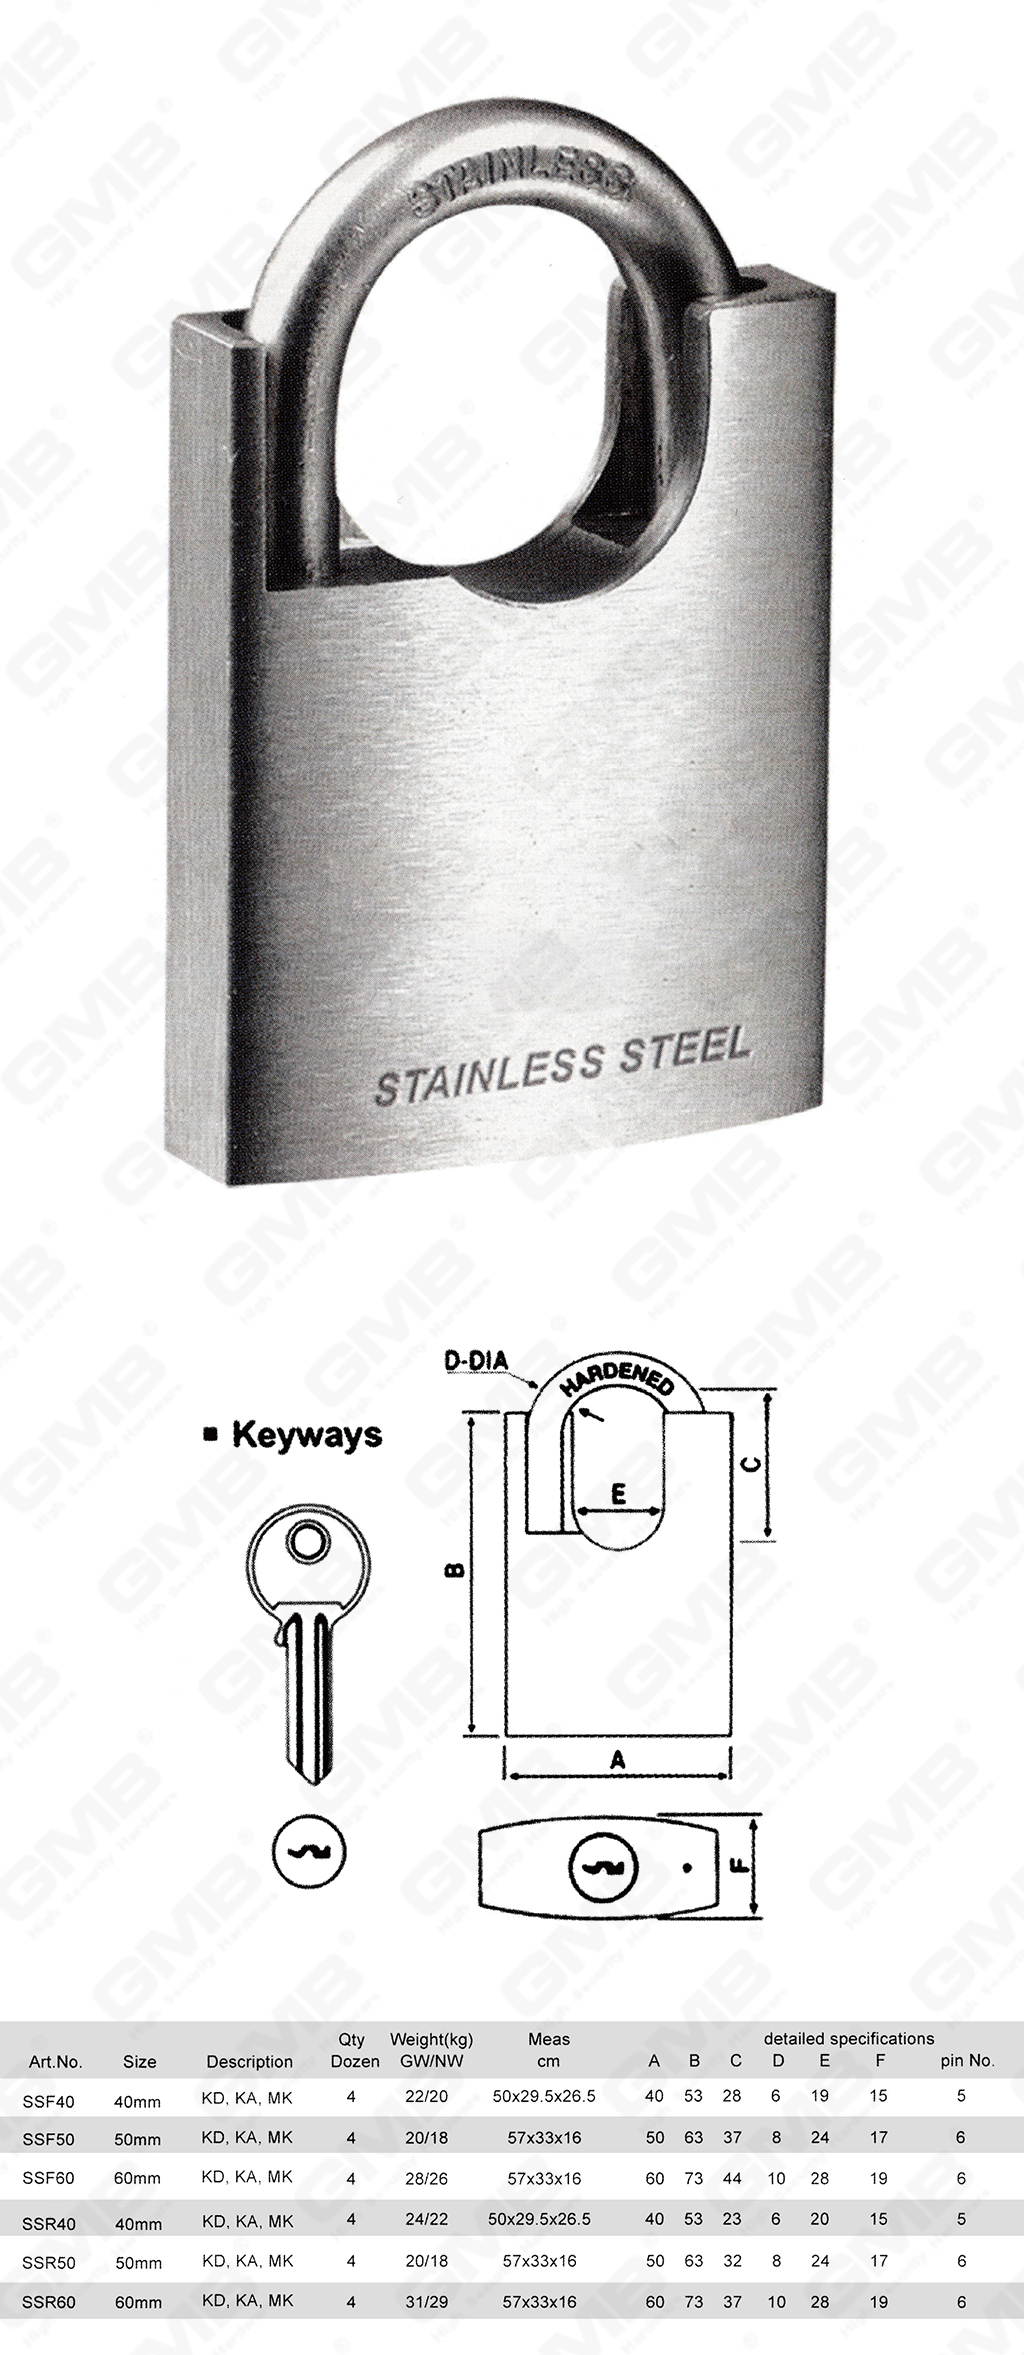 挂锁网站图3_【720】SHACKLE PROTECTED STAINLESS STEEL PADLOCK -64